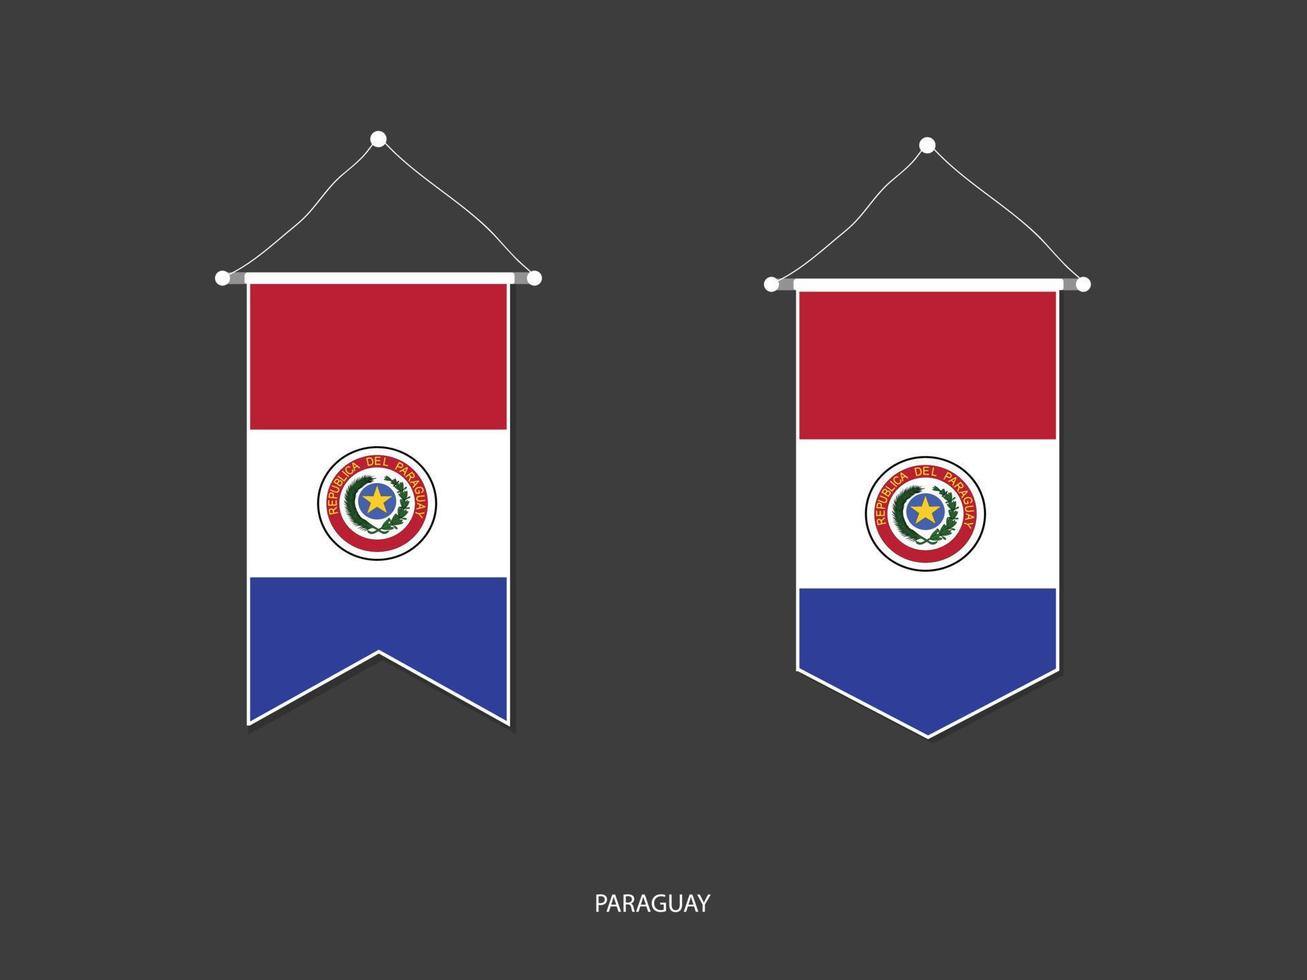 drapeau du paraguay sous diverses formes, vecteur de fanion de drapeau de football, illustration vectorielle.